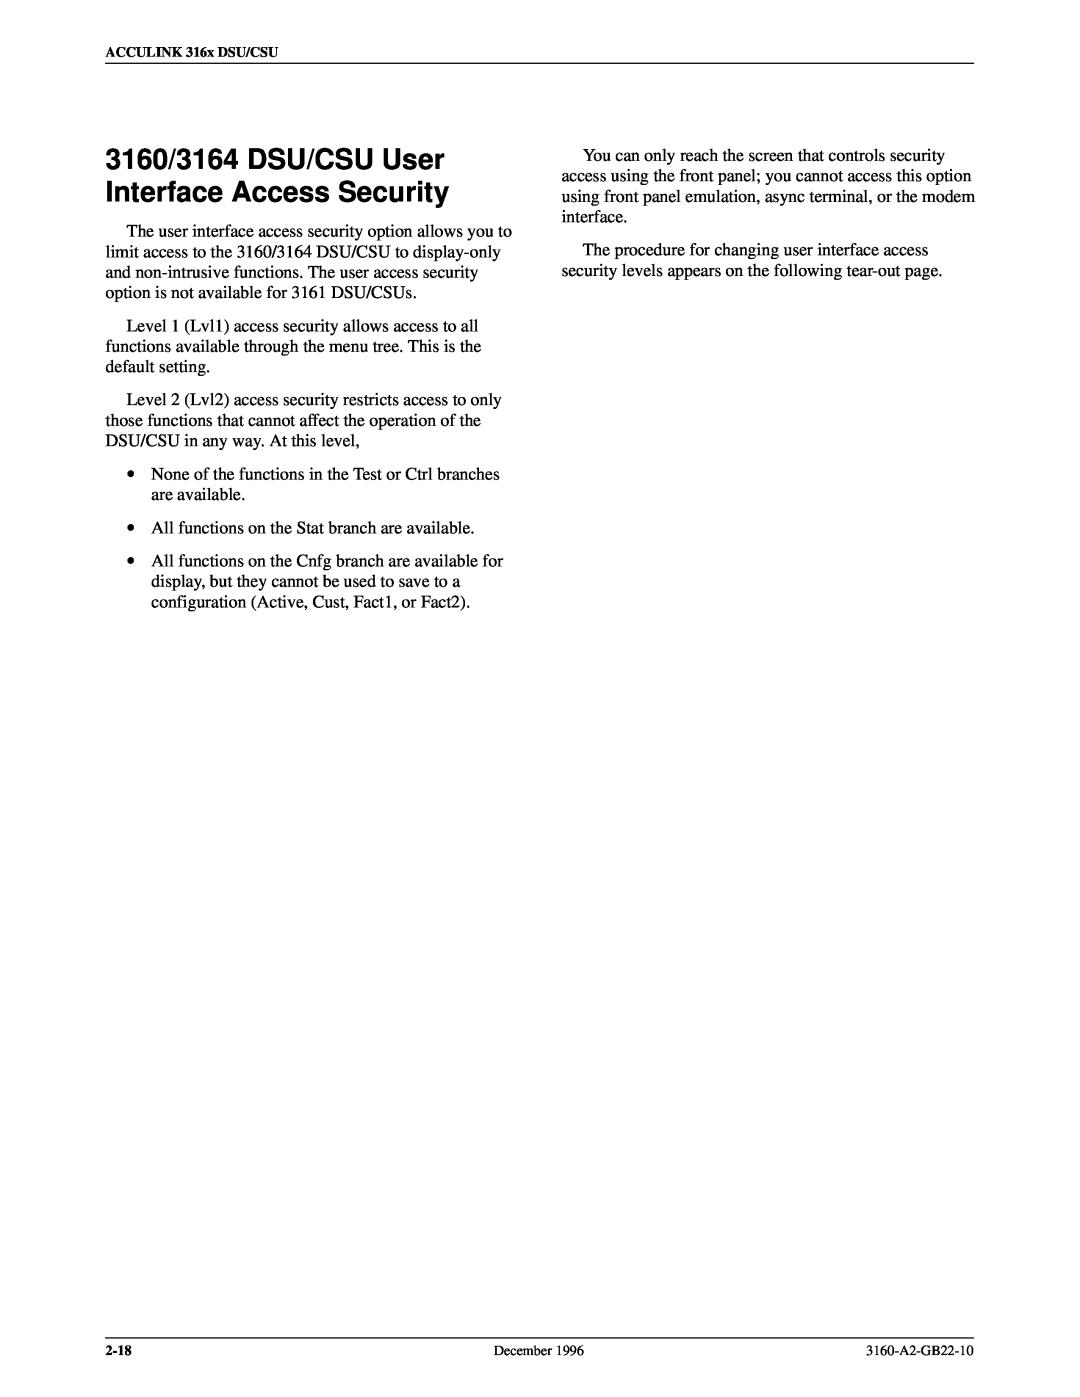 Paradyne 316x manual 3160/3164 DSU/CSU User Interface Access Security 